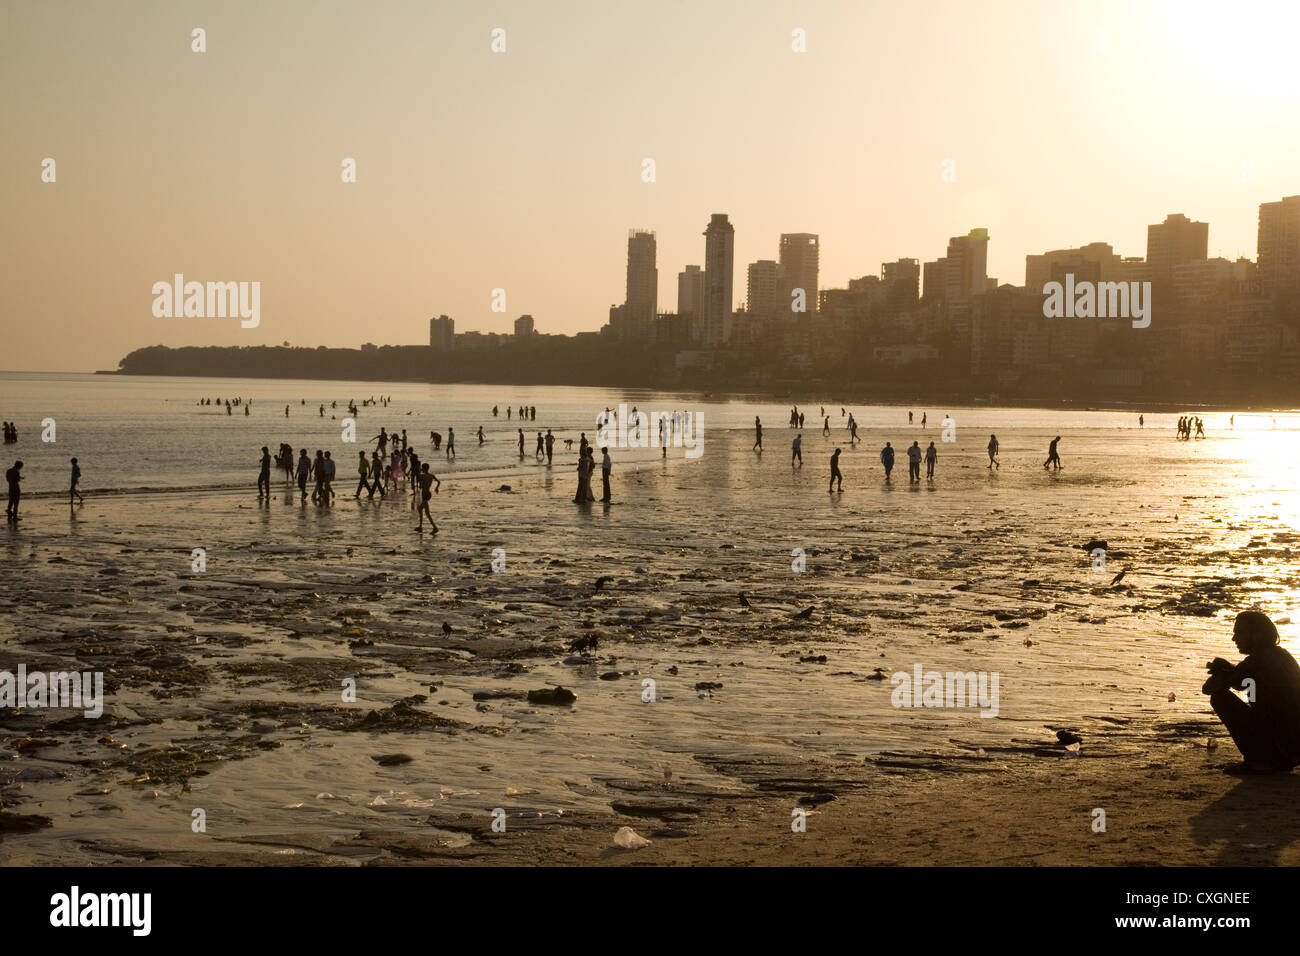 Chowpatty Beach at sunset, Mumbai, India. Stock Photo